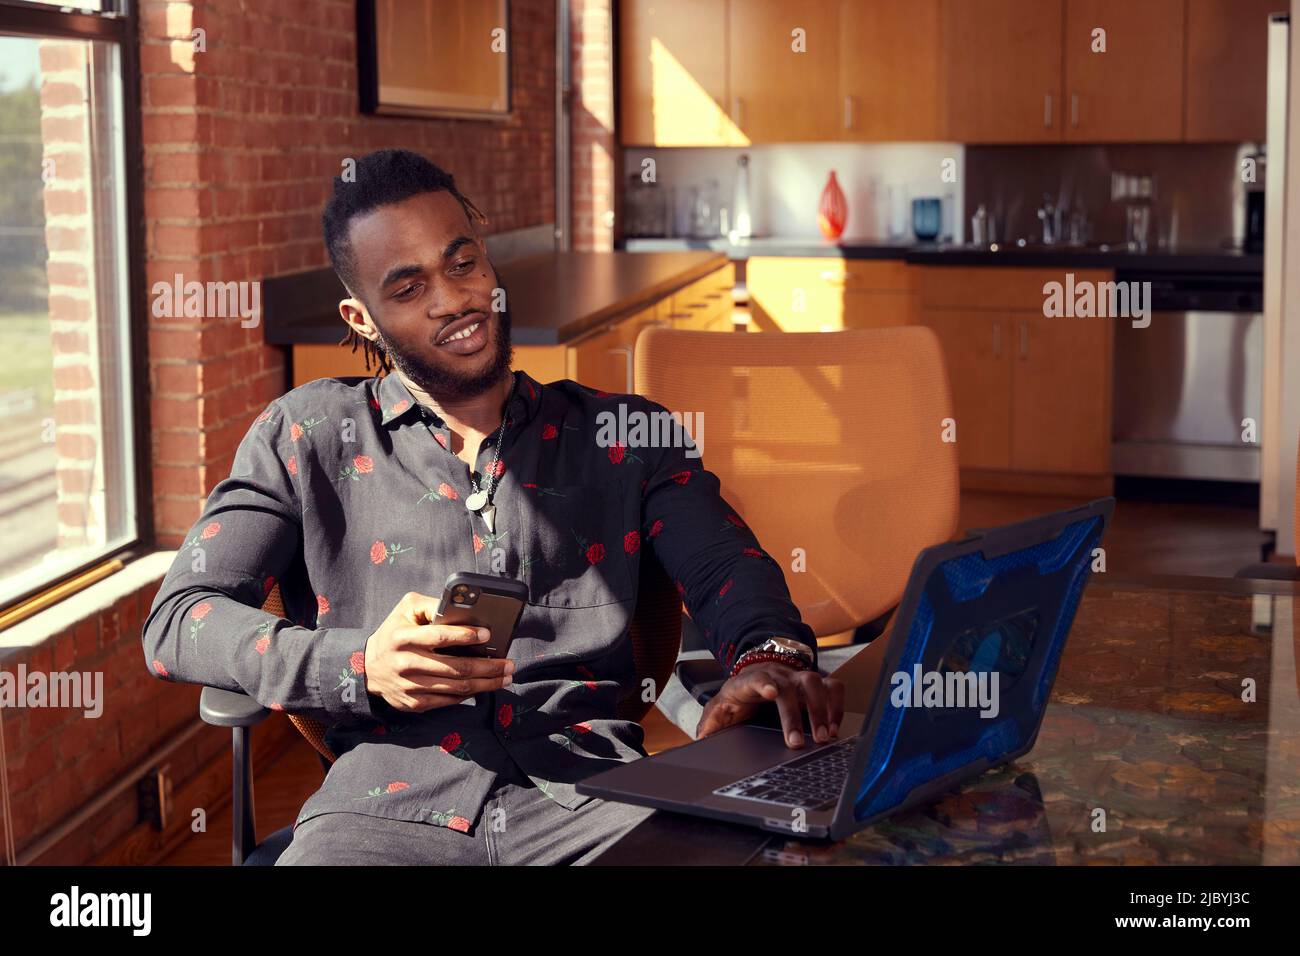 Porträt eines jungen ethnischen Mannes, der mit einem Smartphone und einem Laptop am Konferenztisch sitzt. Stockfoto